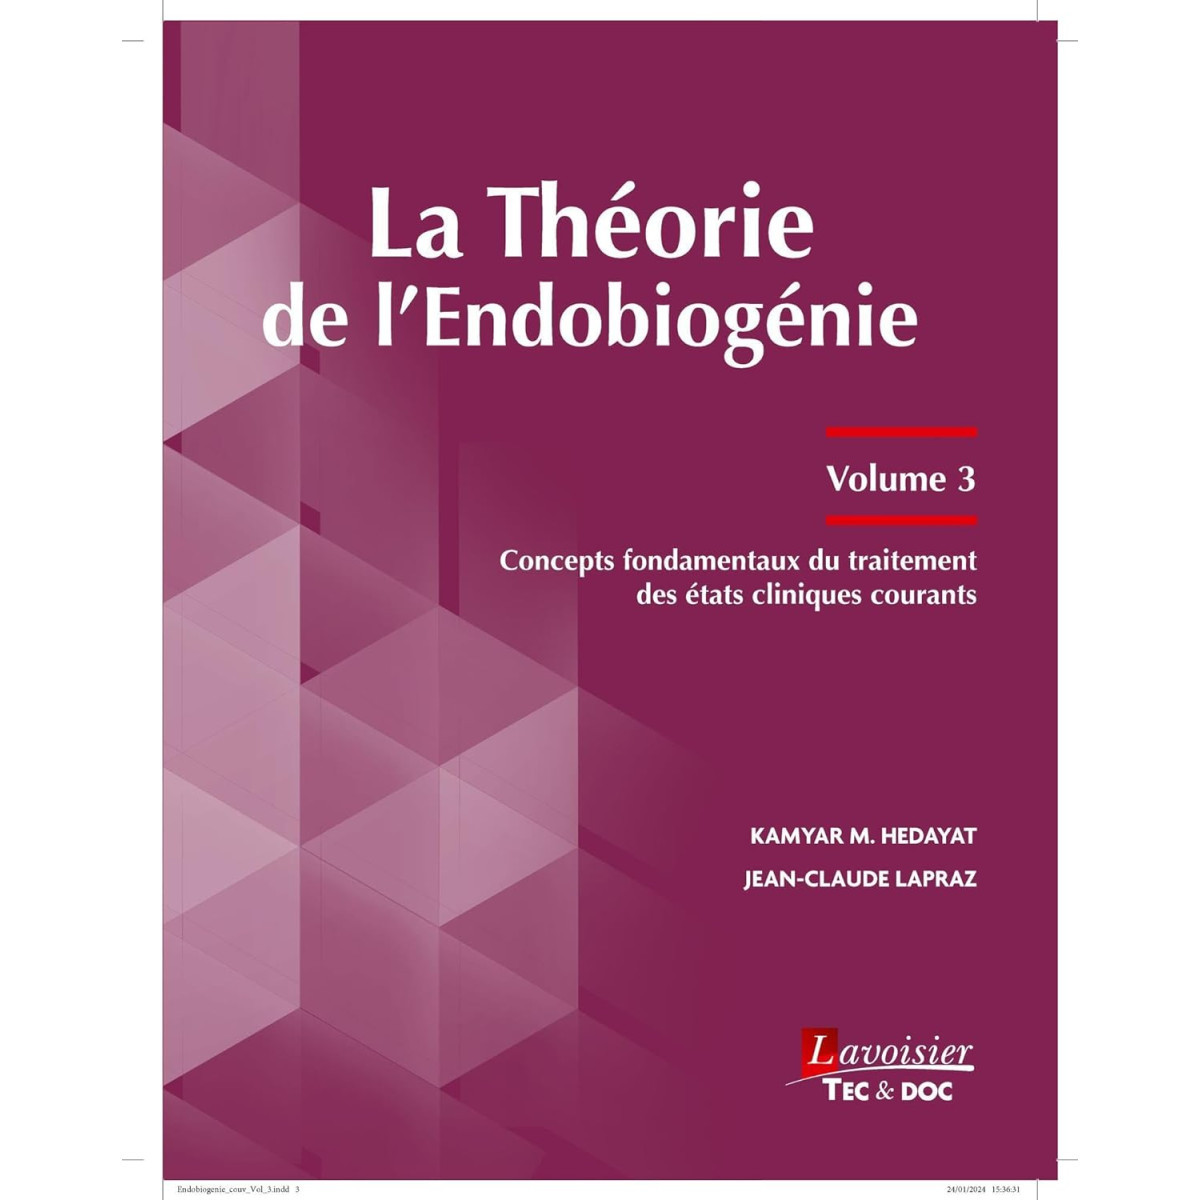 La théorie de l'endobiogénie (volume 3): Concepts fondamentaux du traitement des états cliniques courants